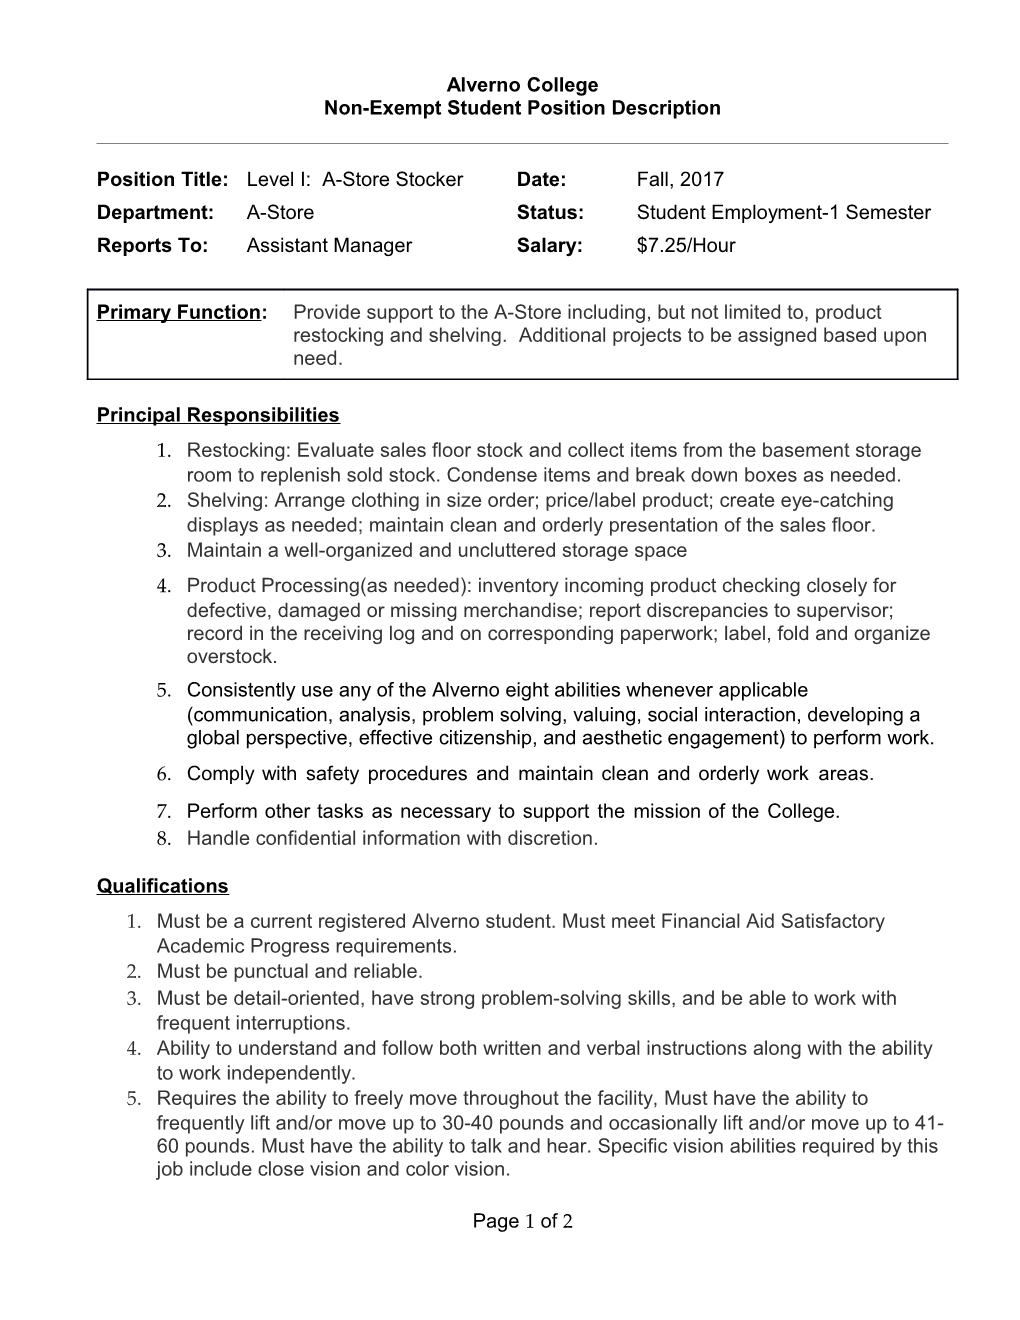 Non-Exempt Student Position Description